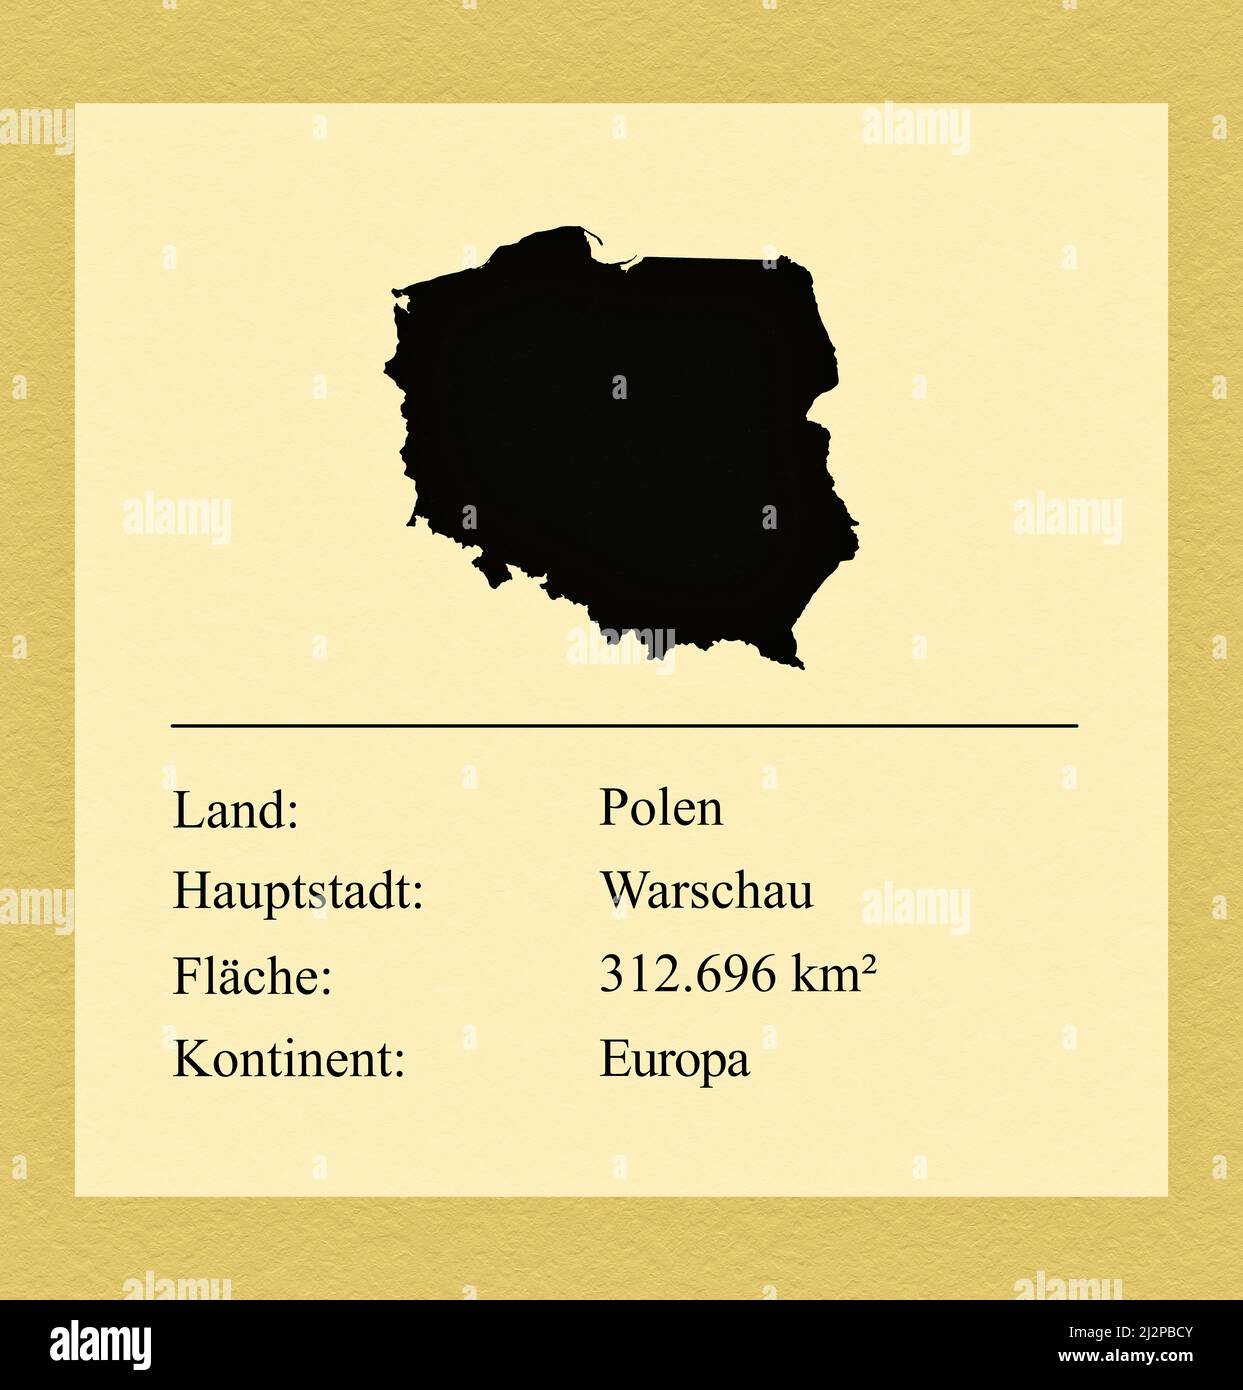 Umrisse des Landes Polen, darunter ein kleiner Steckbrief mit Ländernamen, Hauptstadt, Fläche und Kontinent Stock Photo